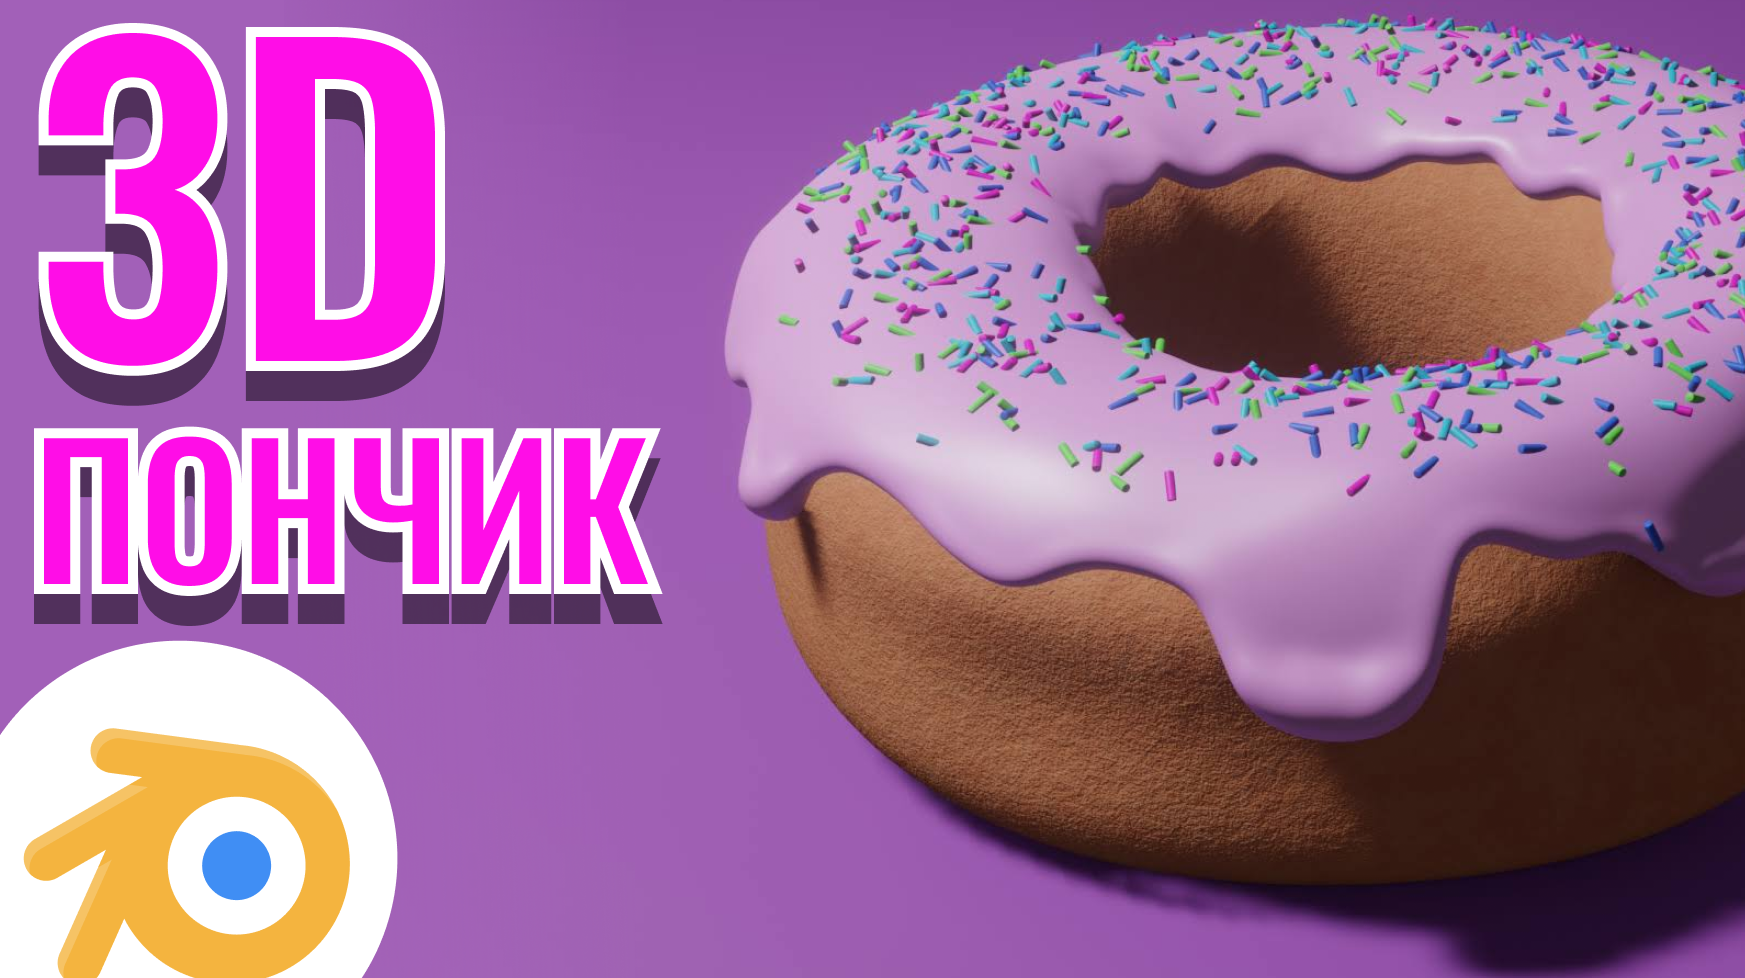 3D пончик за 1 час _ Blender